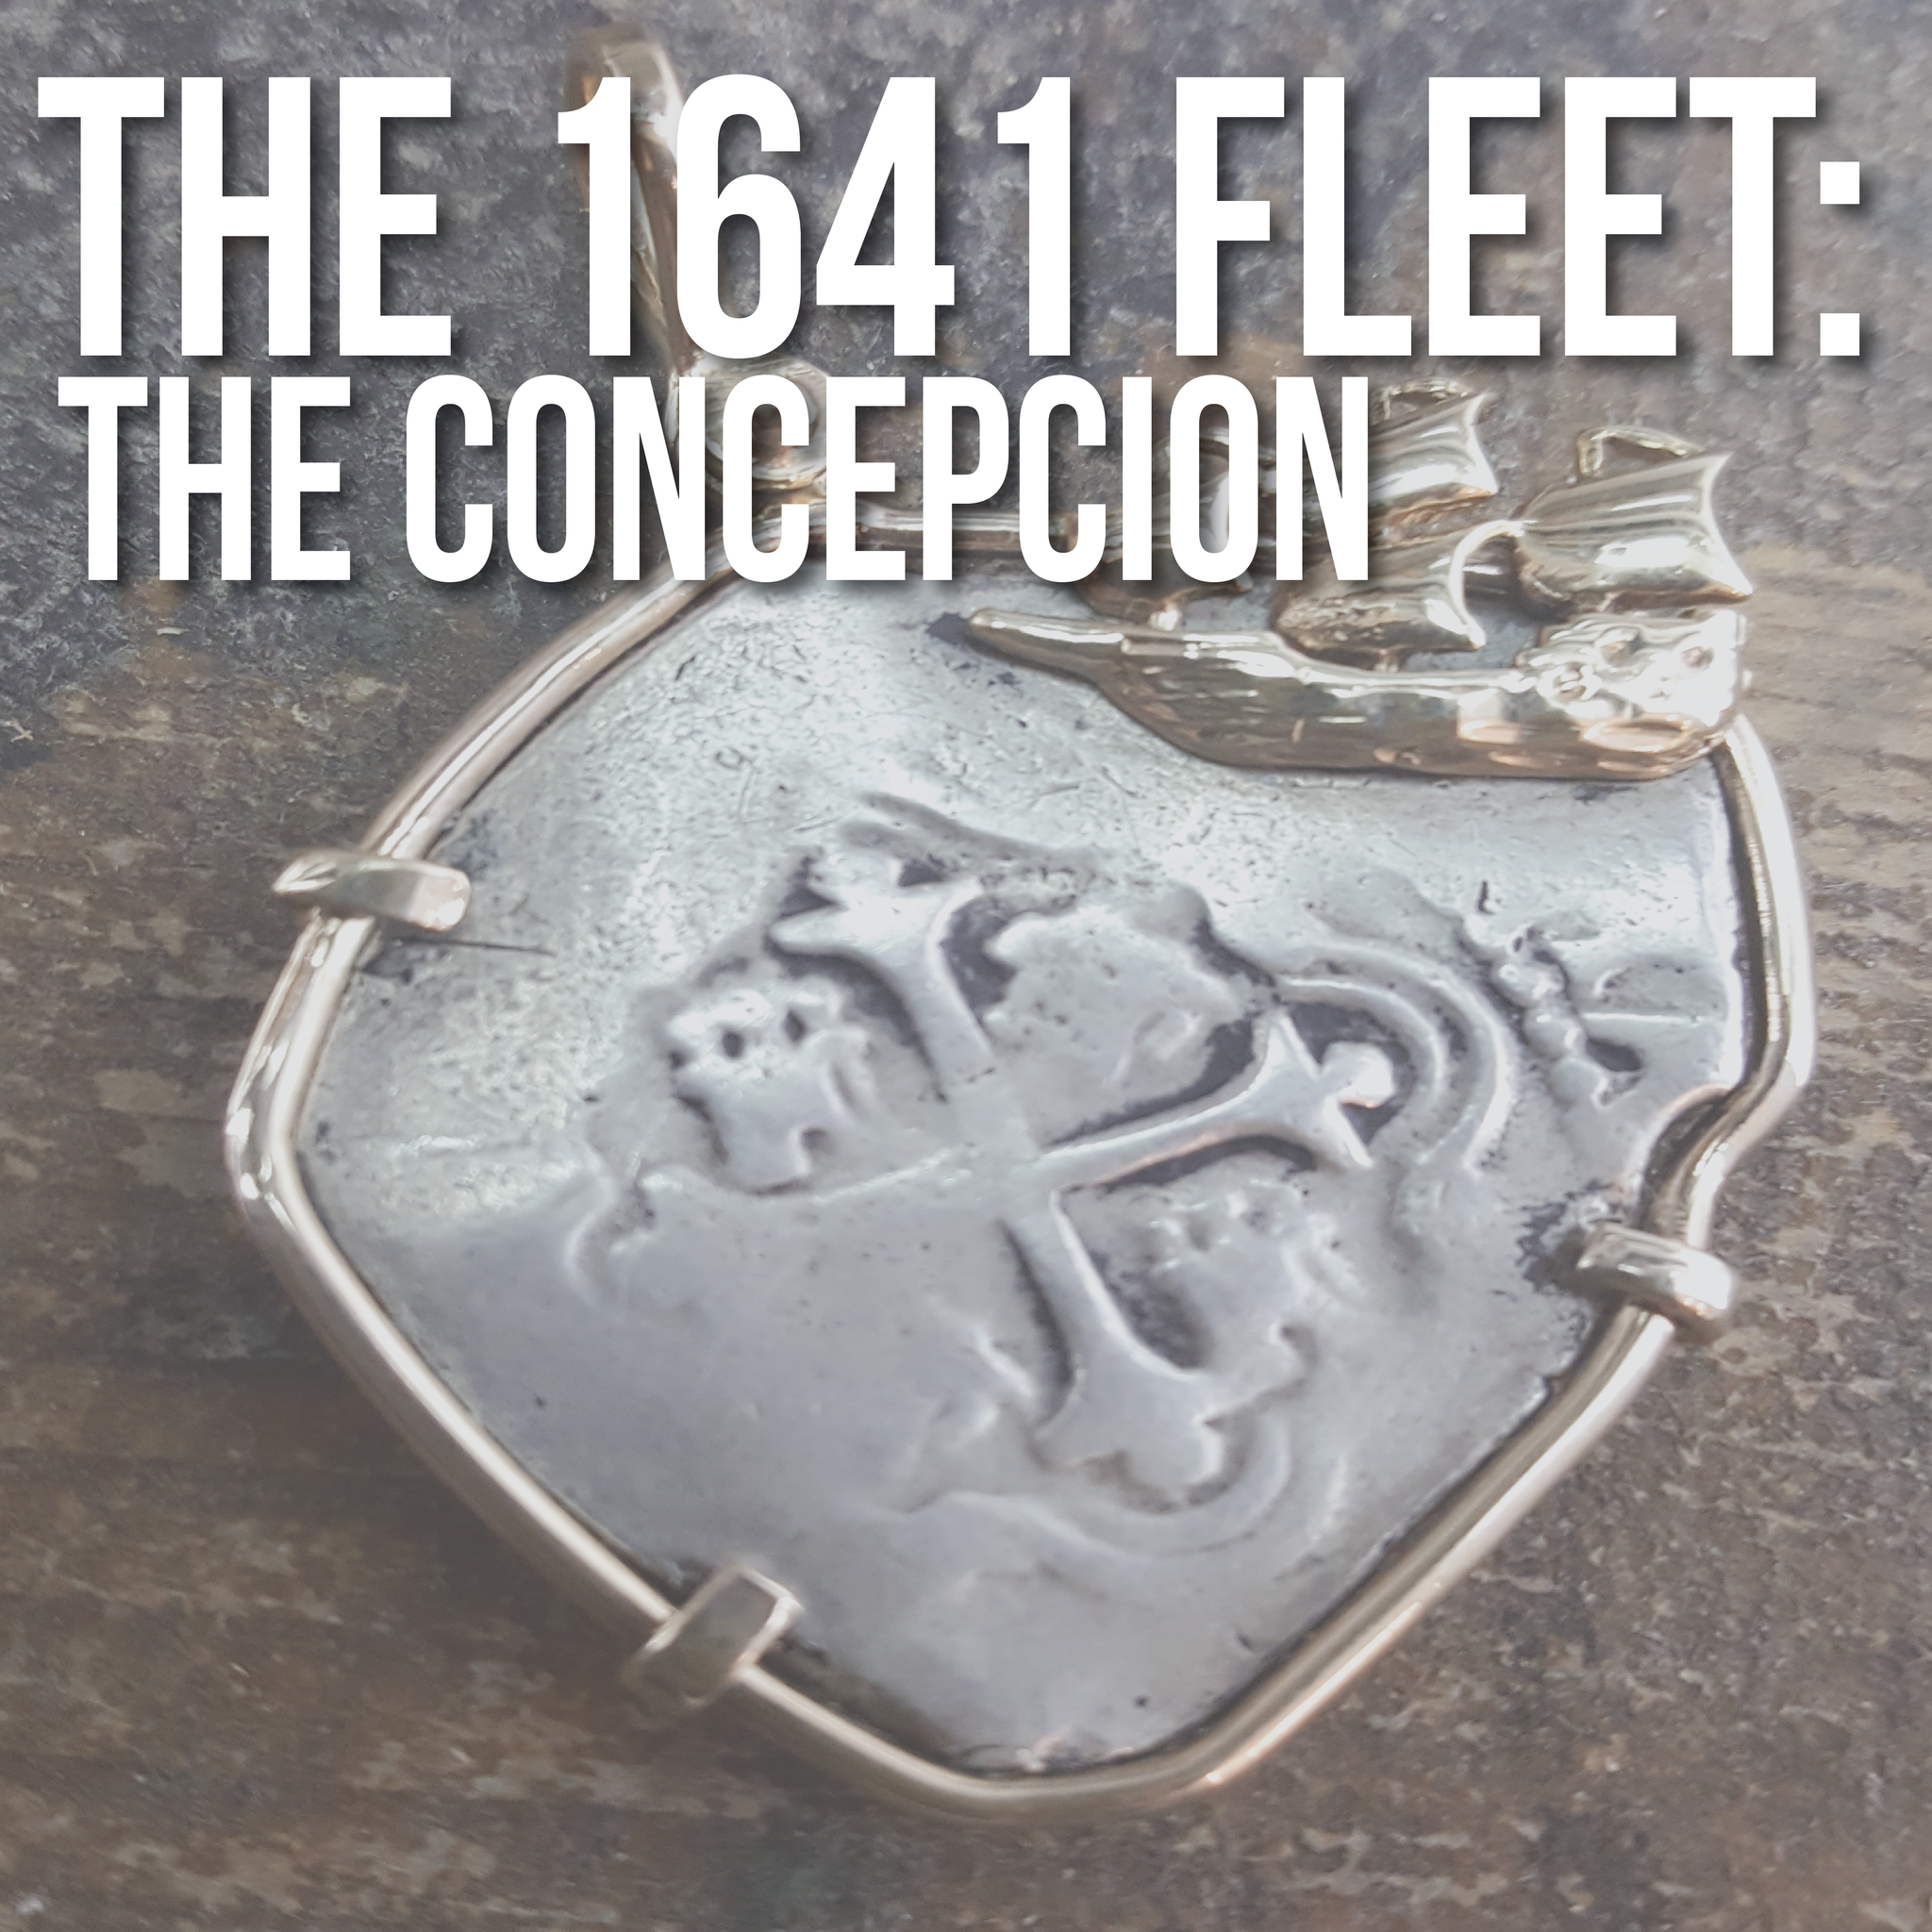 The 1641 fleet: The Concepción